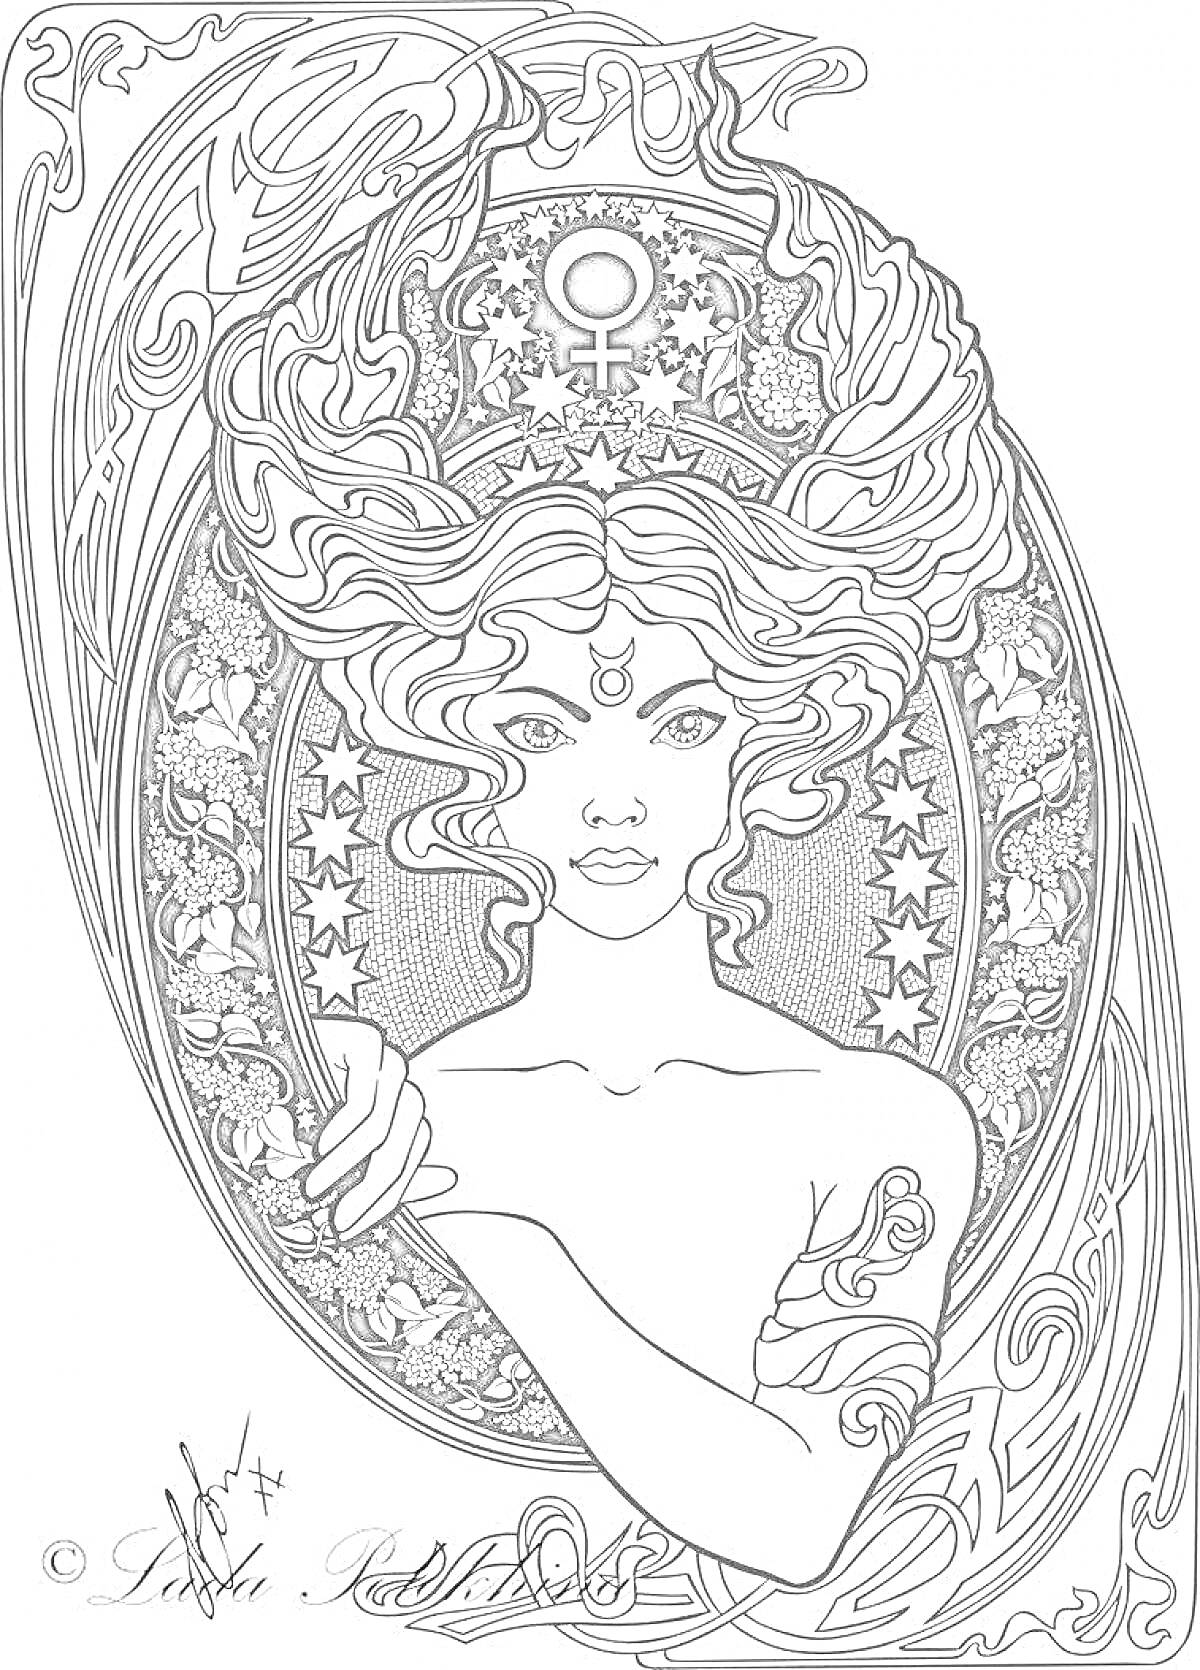 Раскраска Женщина со знаком Венеры и длинными волнистыми волосами на фоне овала с орнаментом, звезды, цветы и растительный узор